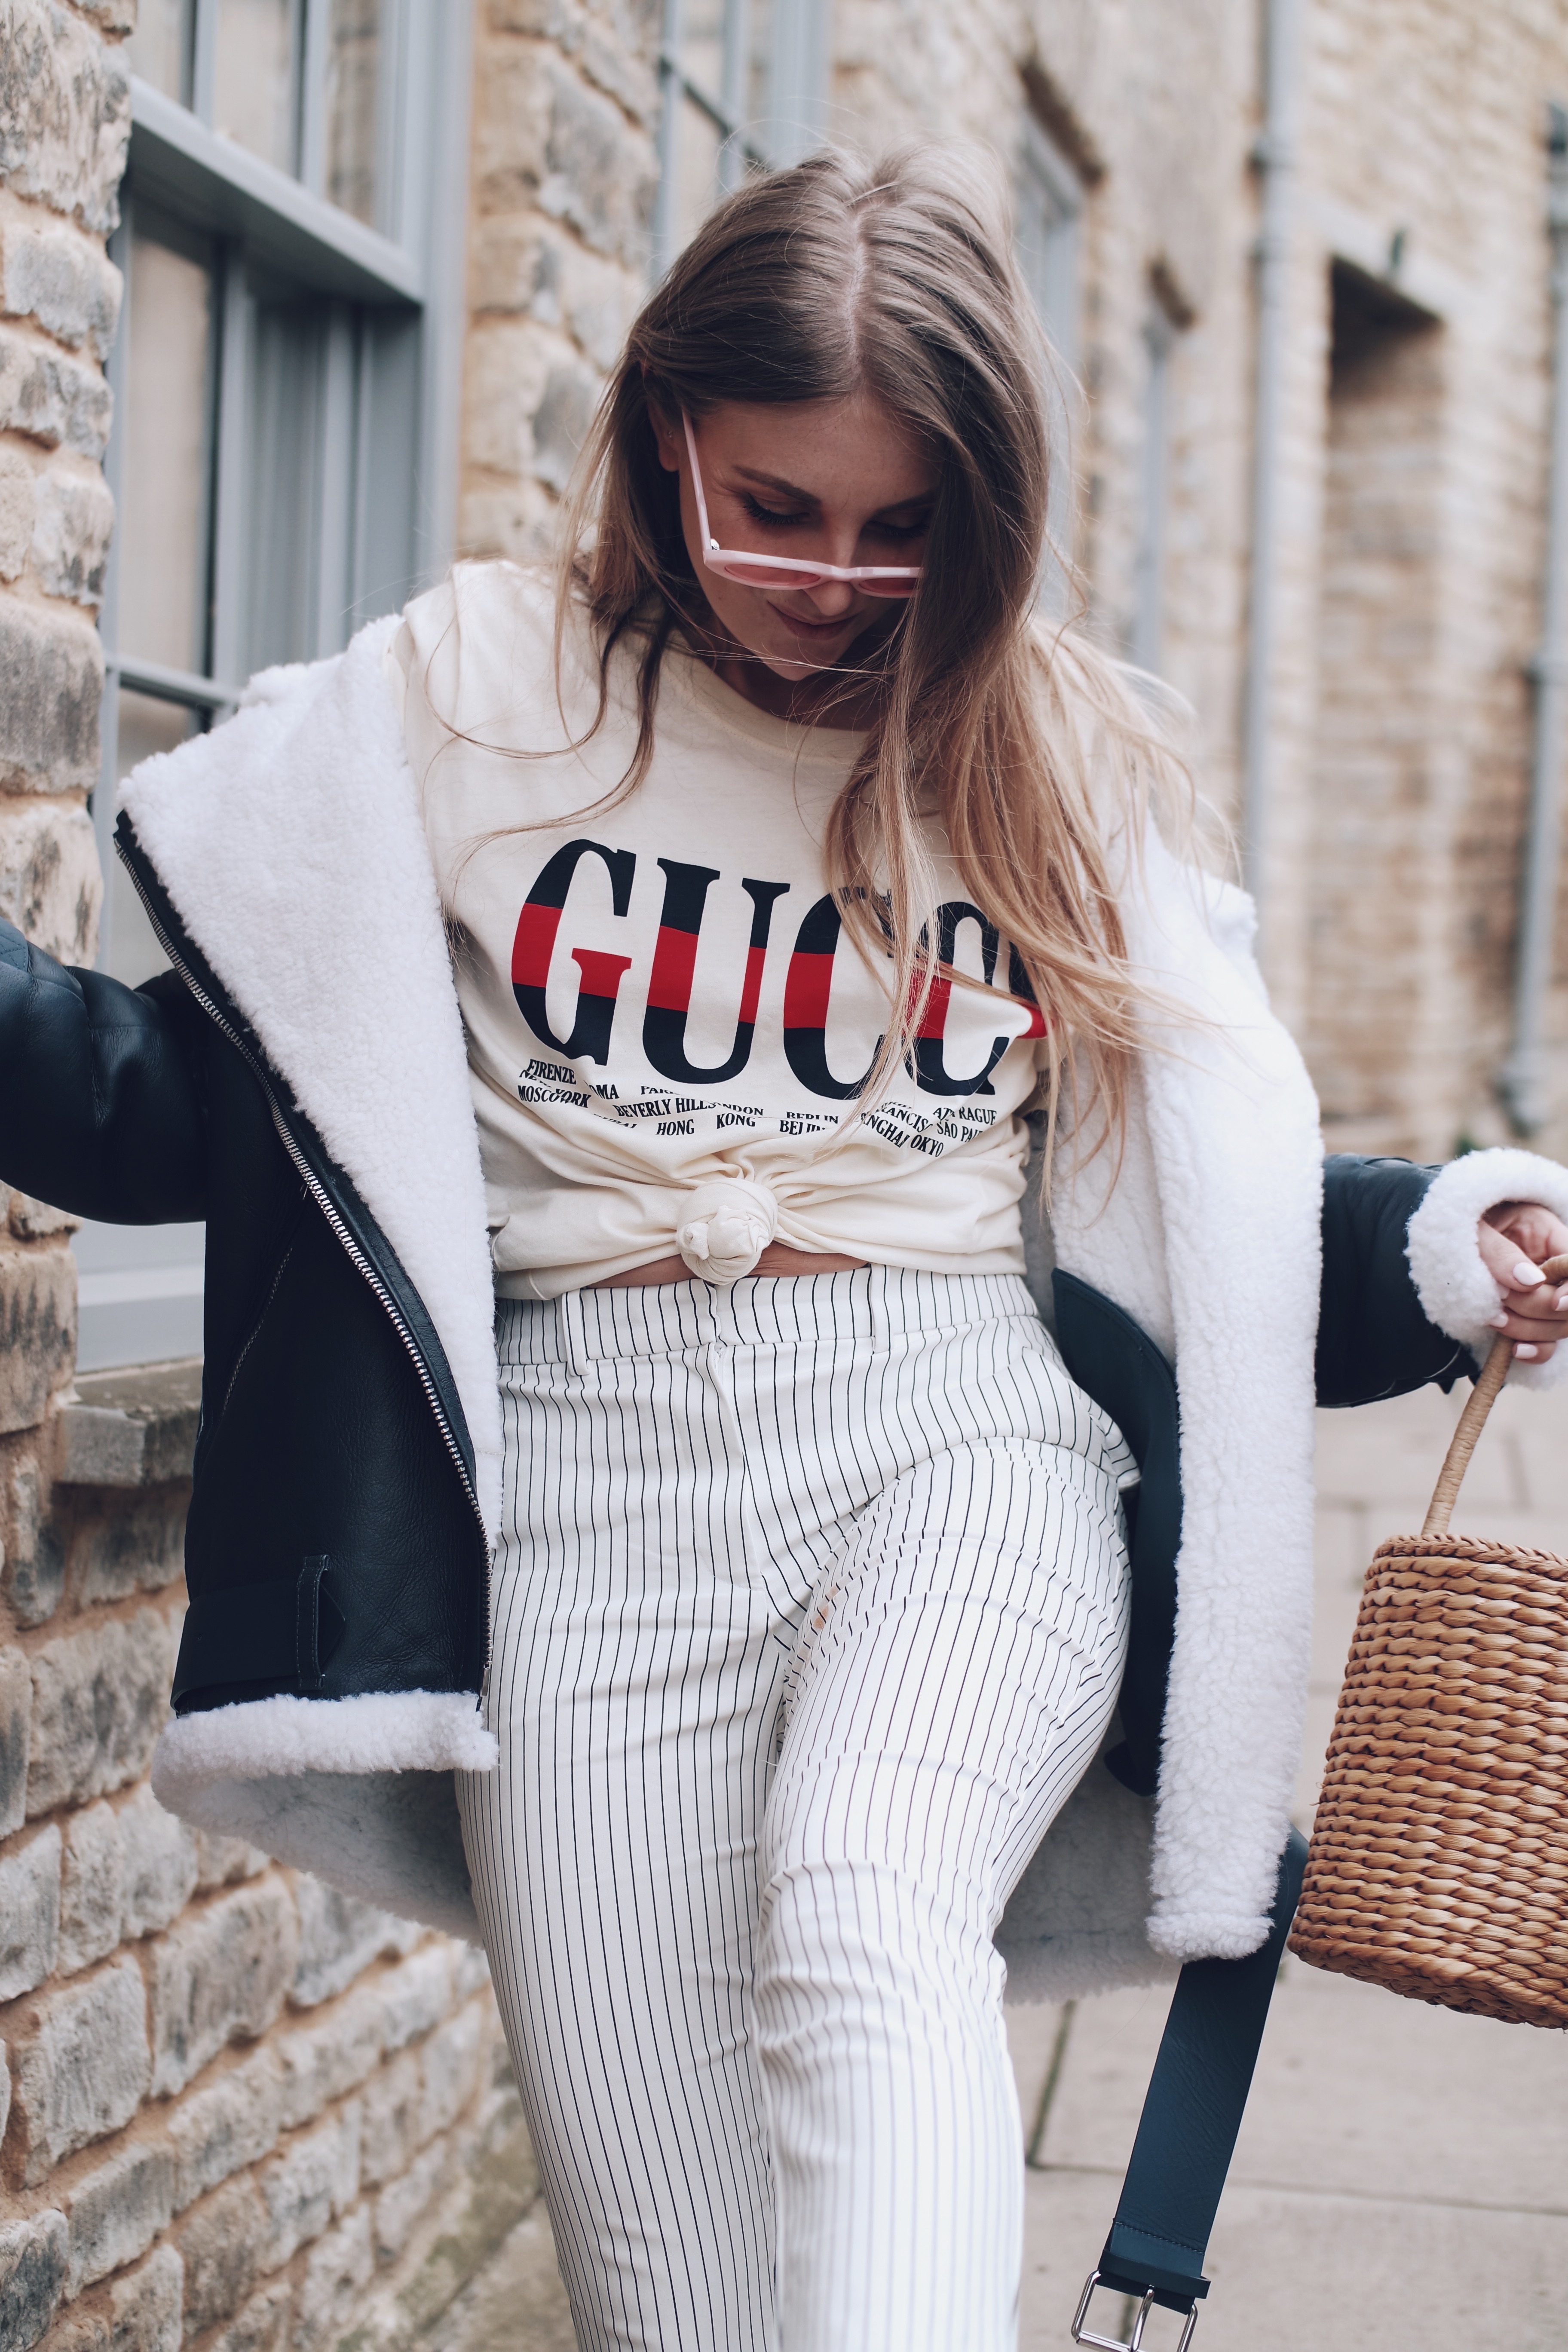 Slogan Gucci T Shirt – Love Style Mindfulness – Fashion & Personal Style  Blog